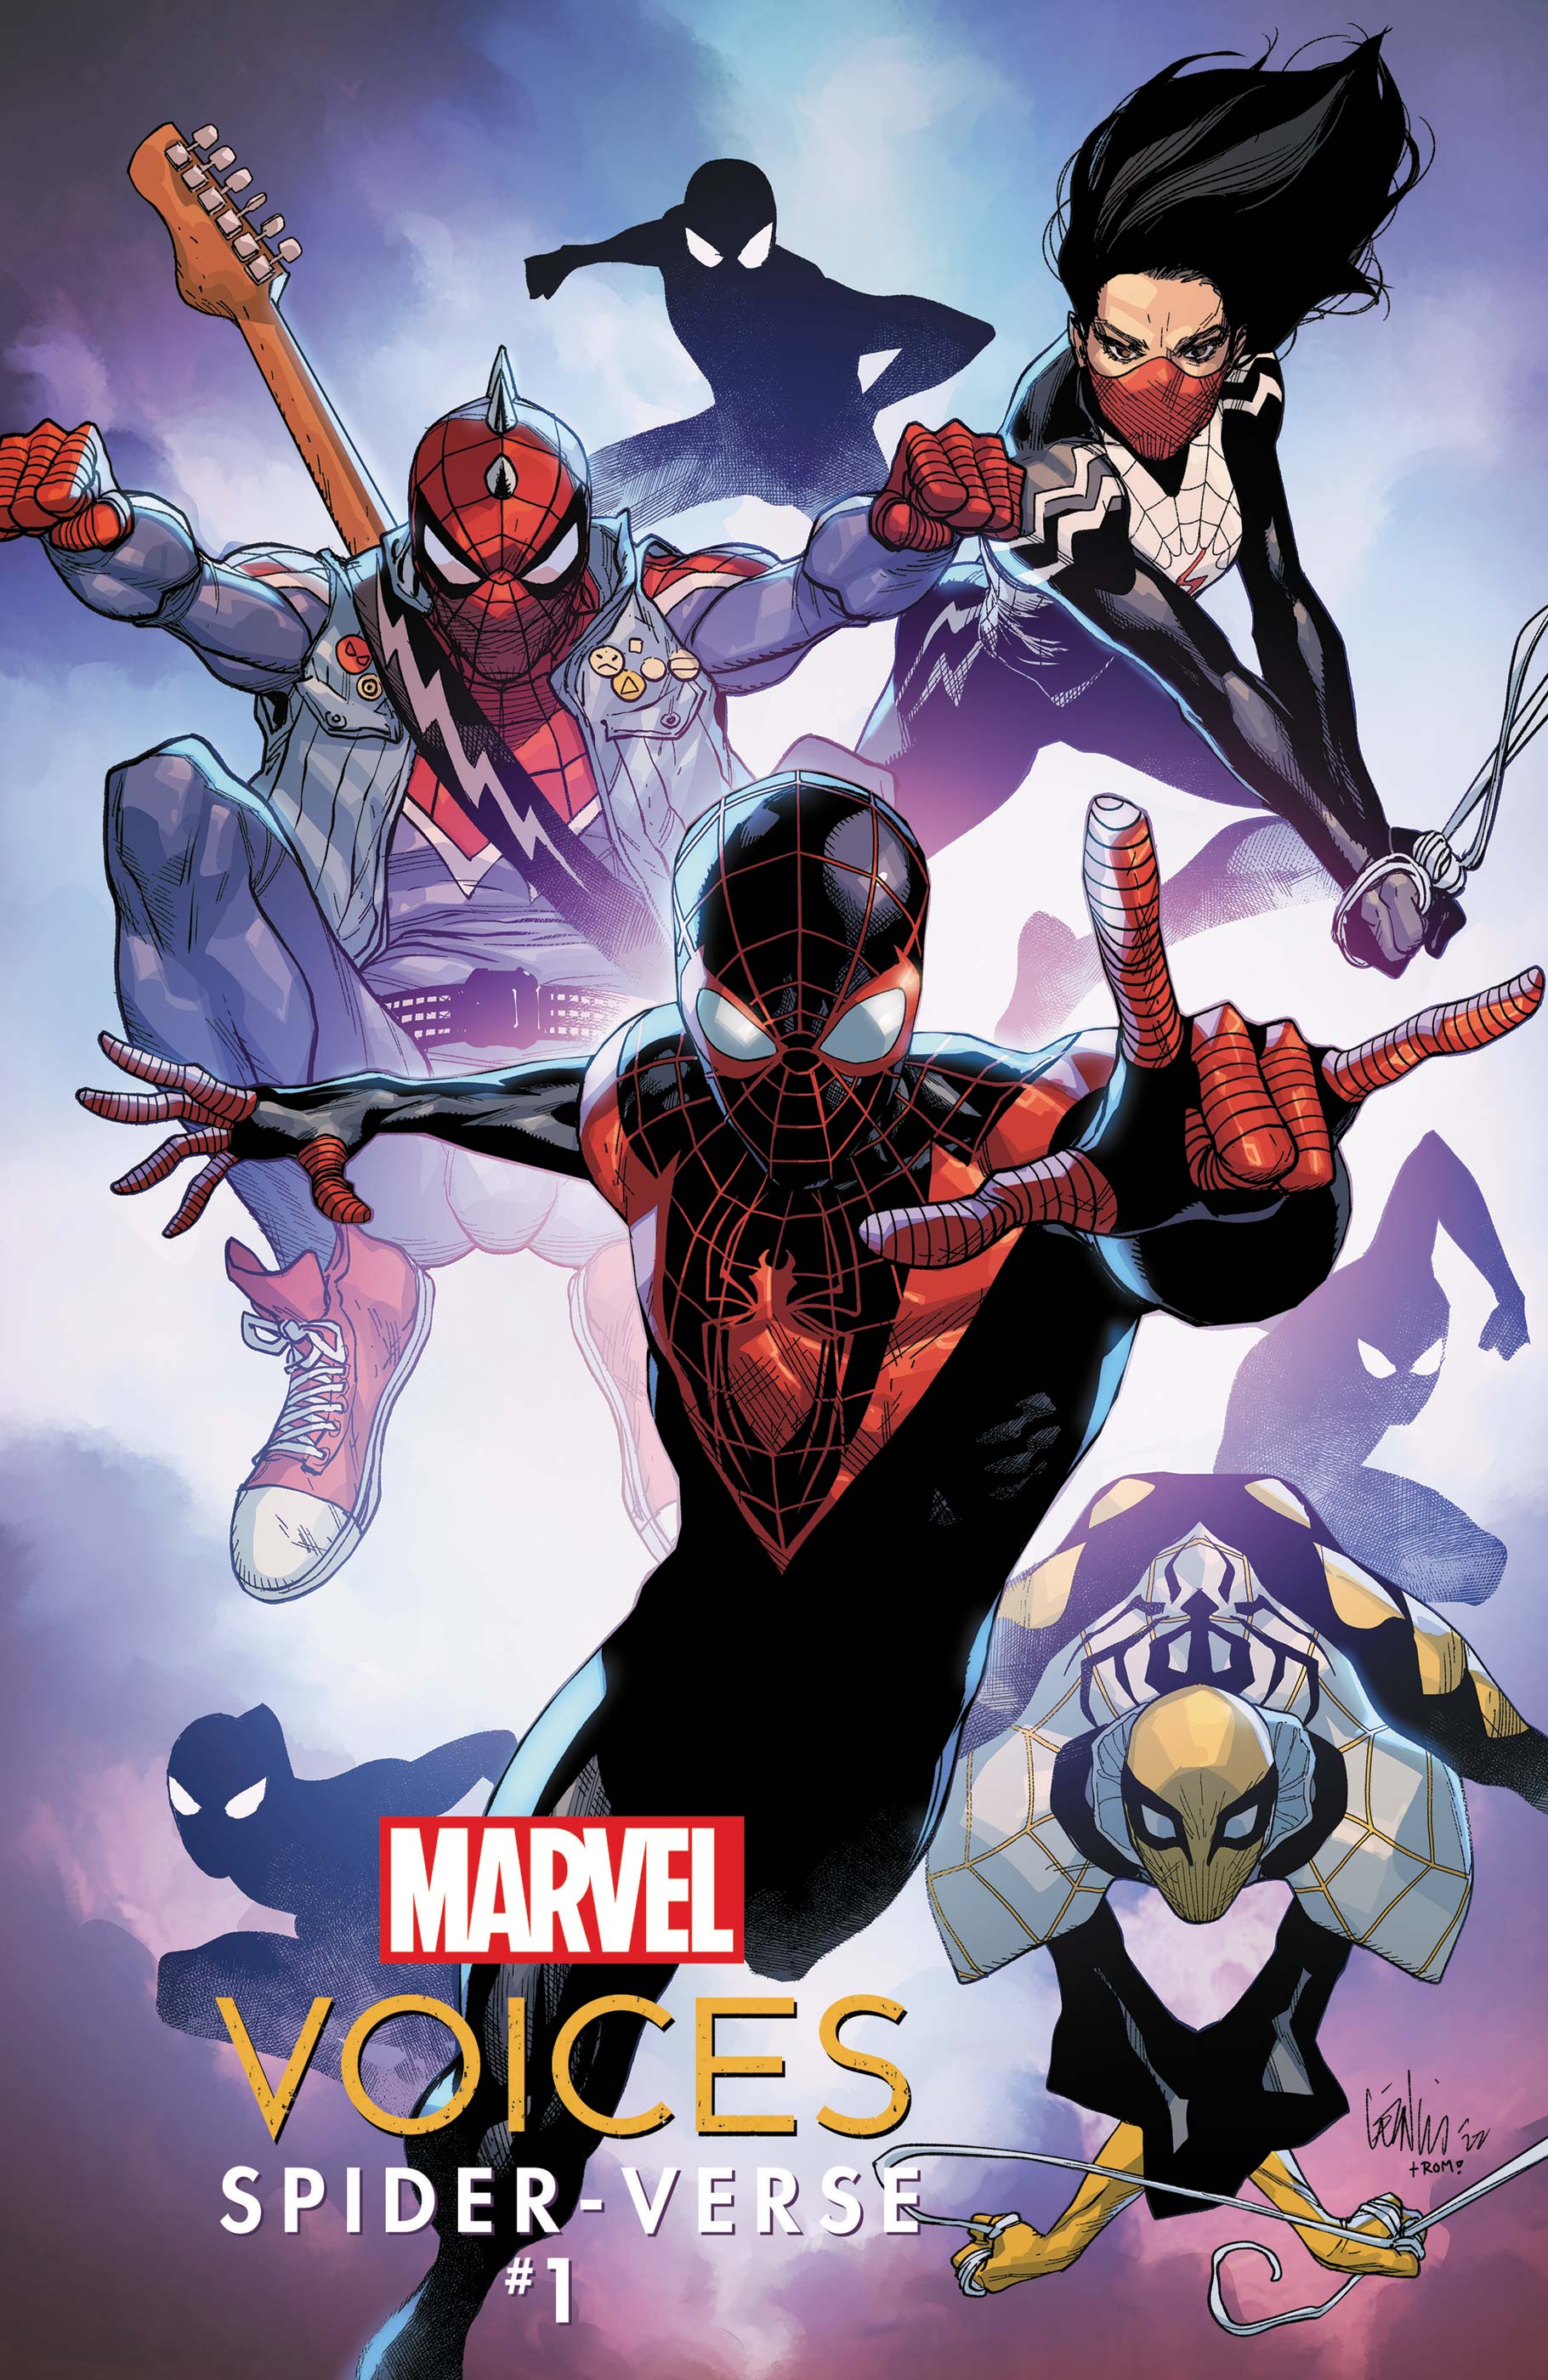 Marvel voices spider-verse #1